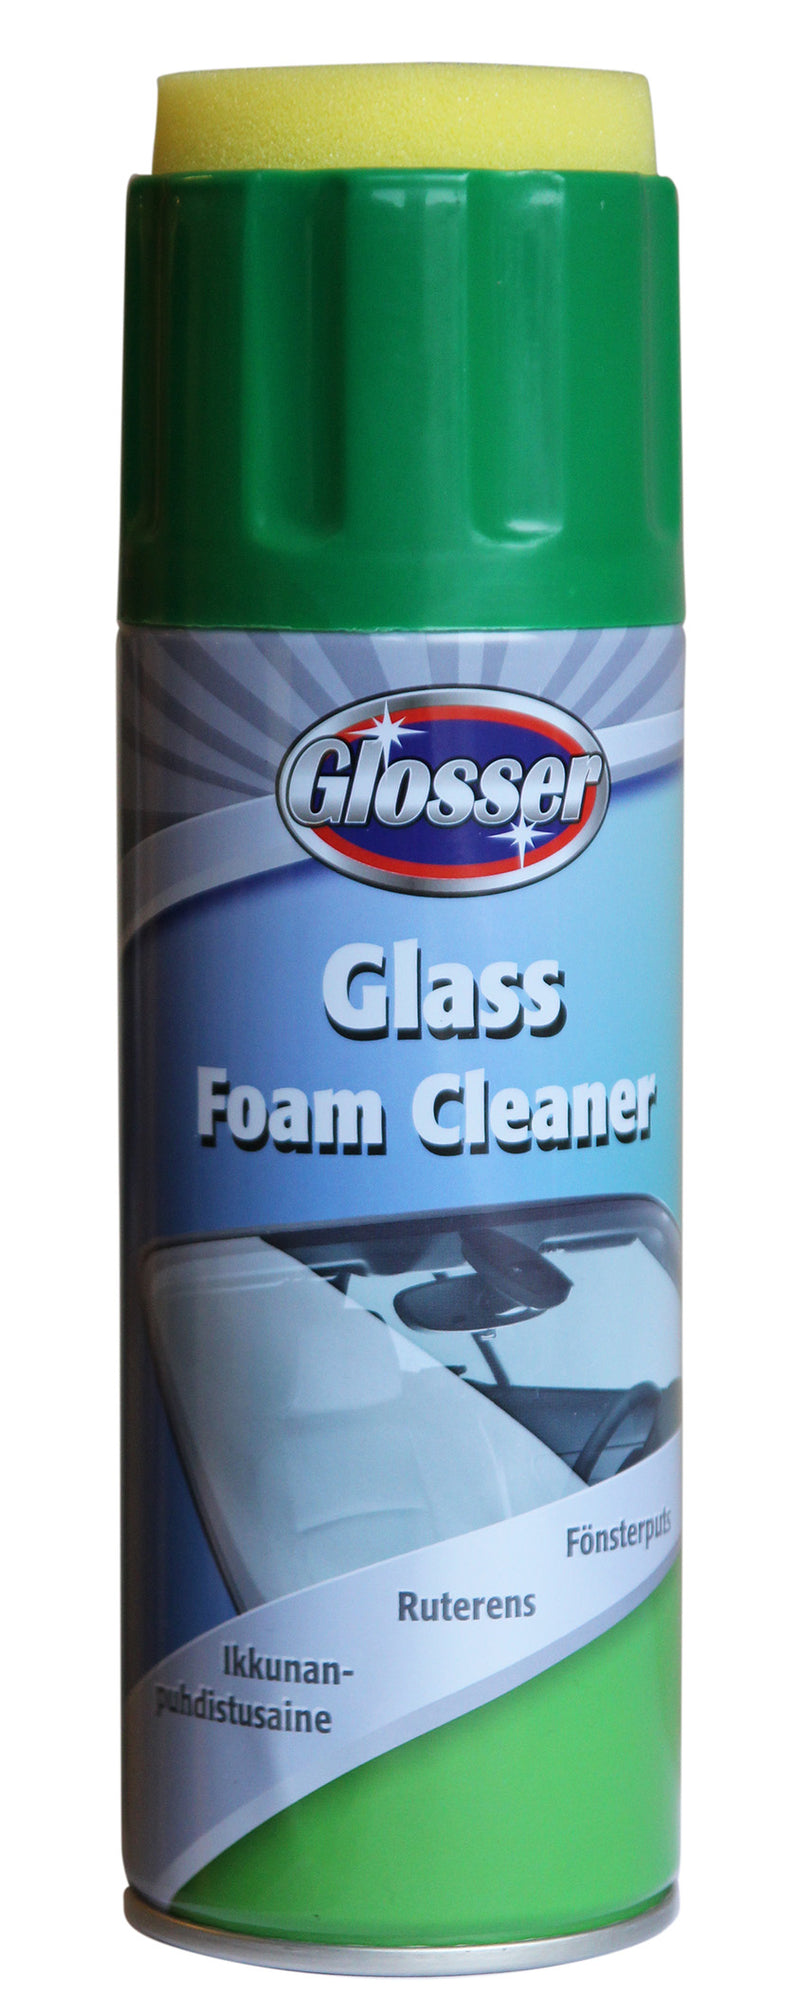 Glosser Foamcleaner Glass 450ml